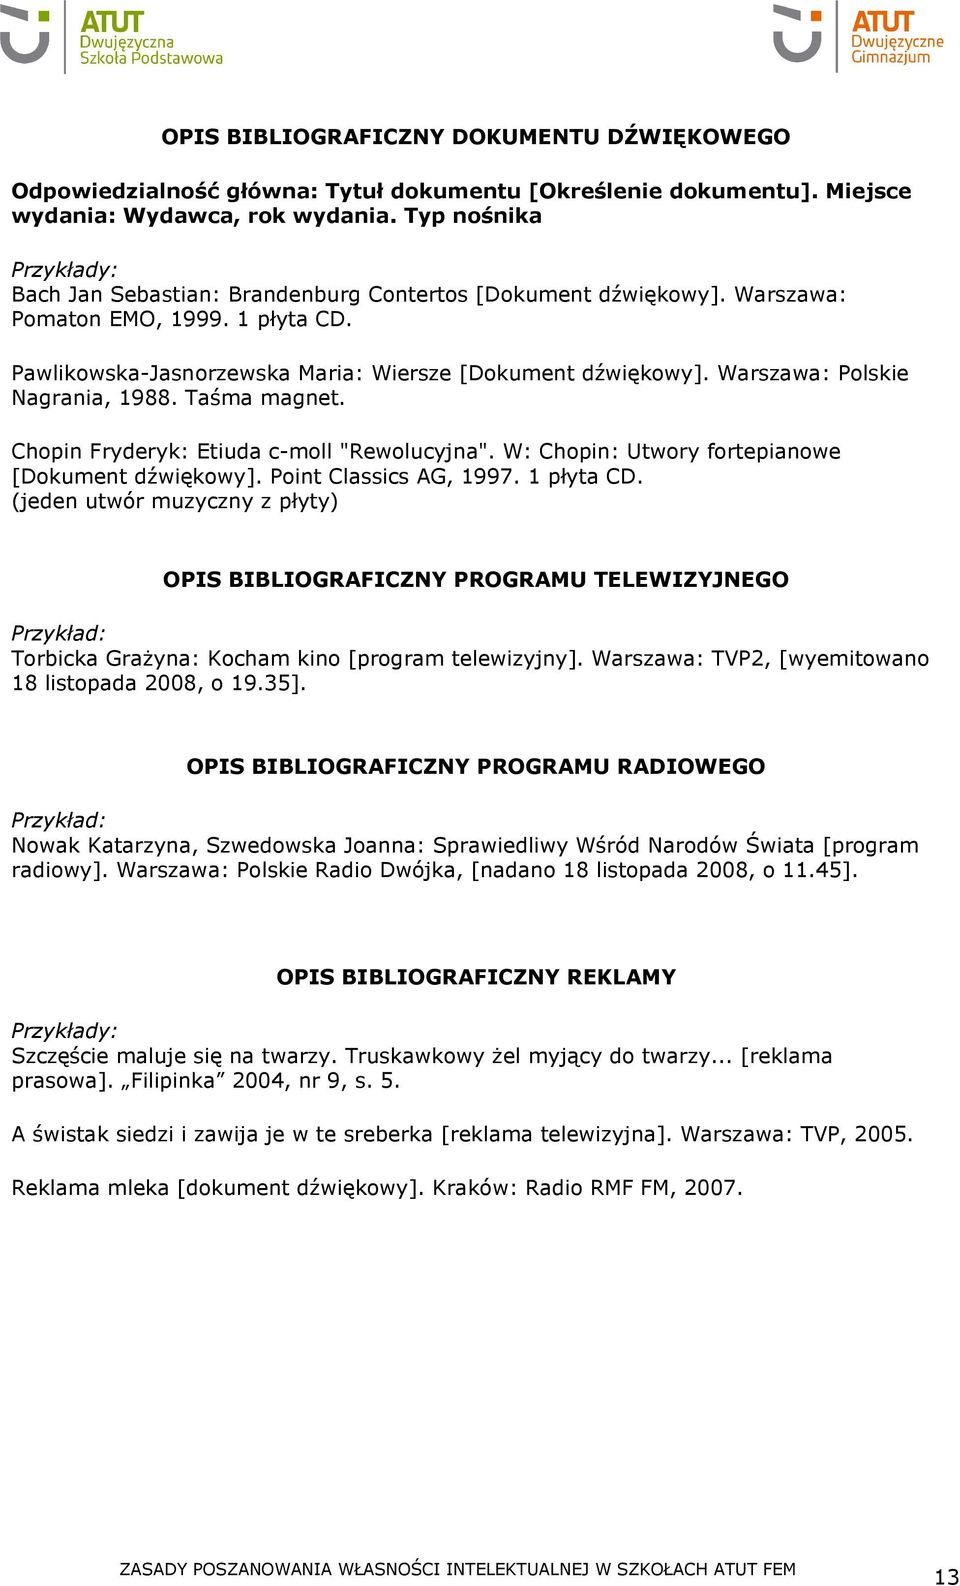 Warszawa: Polskie Nagrania, 1988. Taśma magnet. Chopin Fryderyk: Etiuda c-moll "Rewolucyjna". W: Chopin: Utwory fortepianowe [Dokument dźwiękowy]. Point Classics AG, 1997. 1 płyta CD.